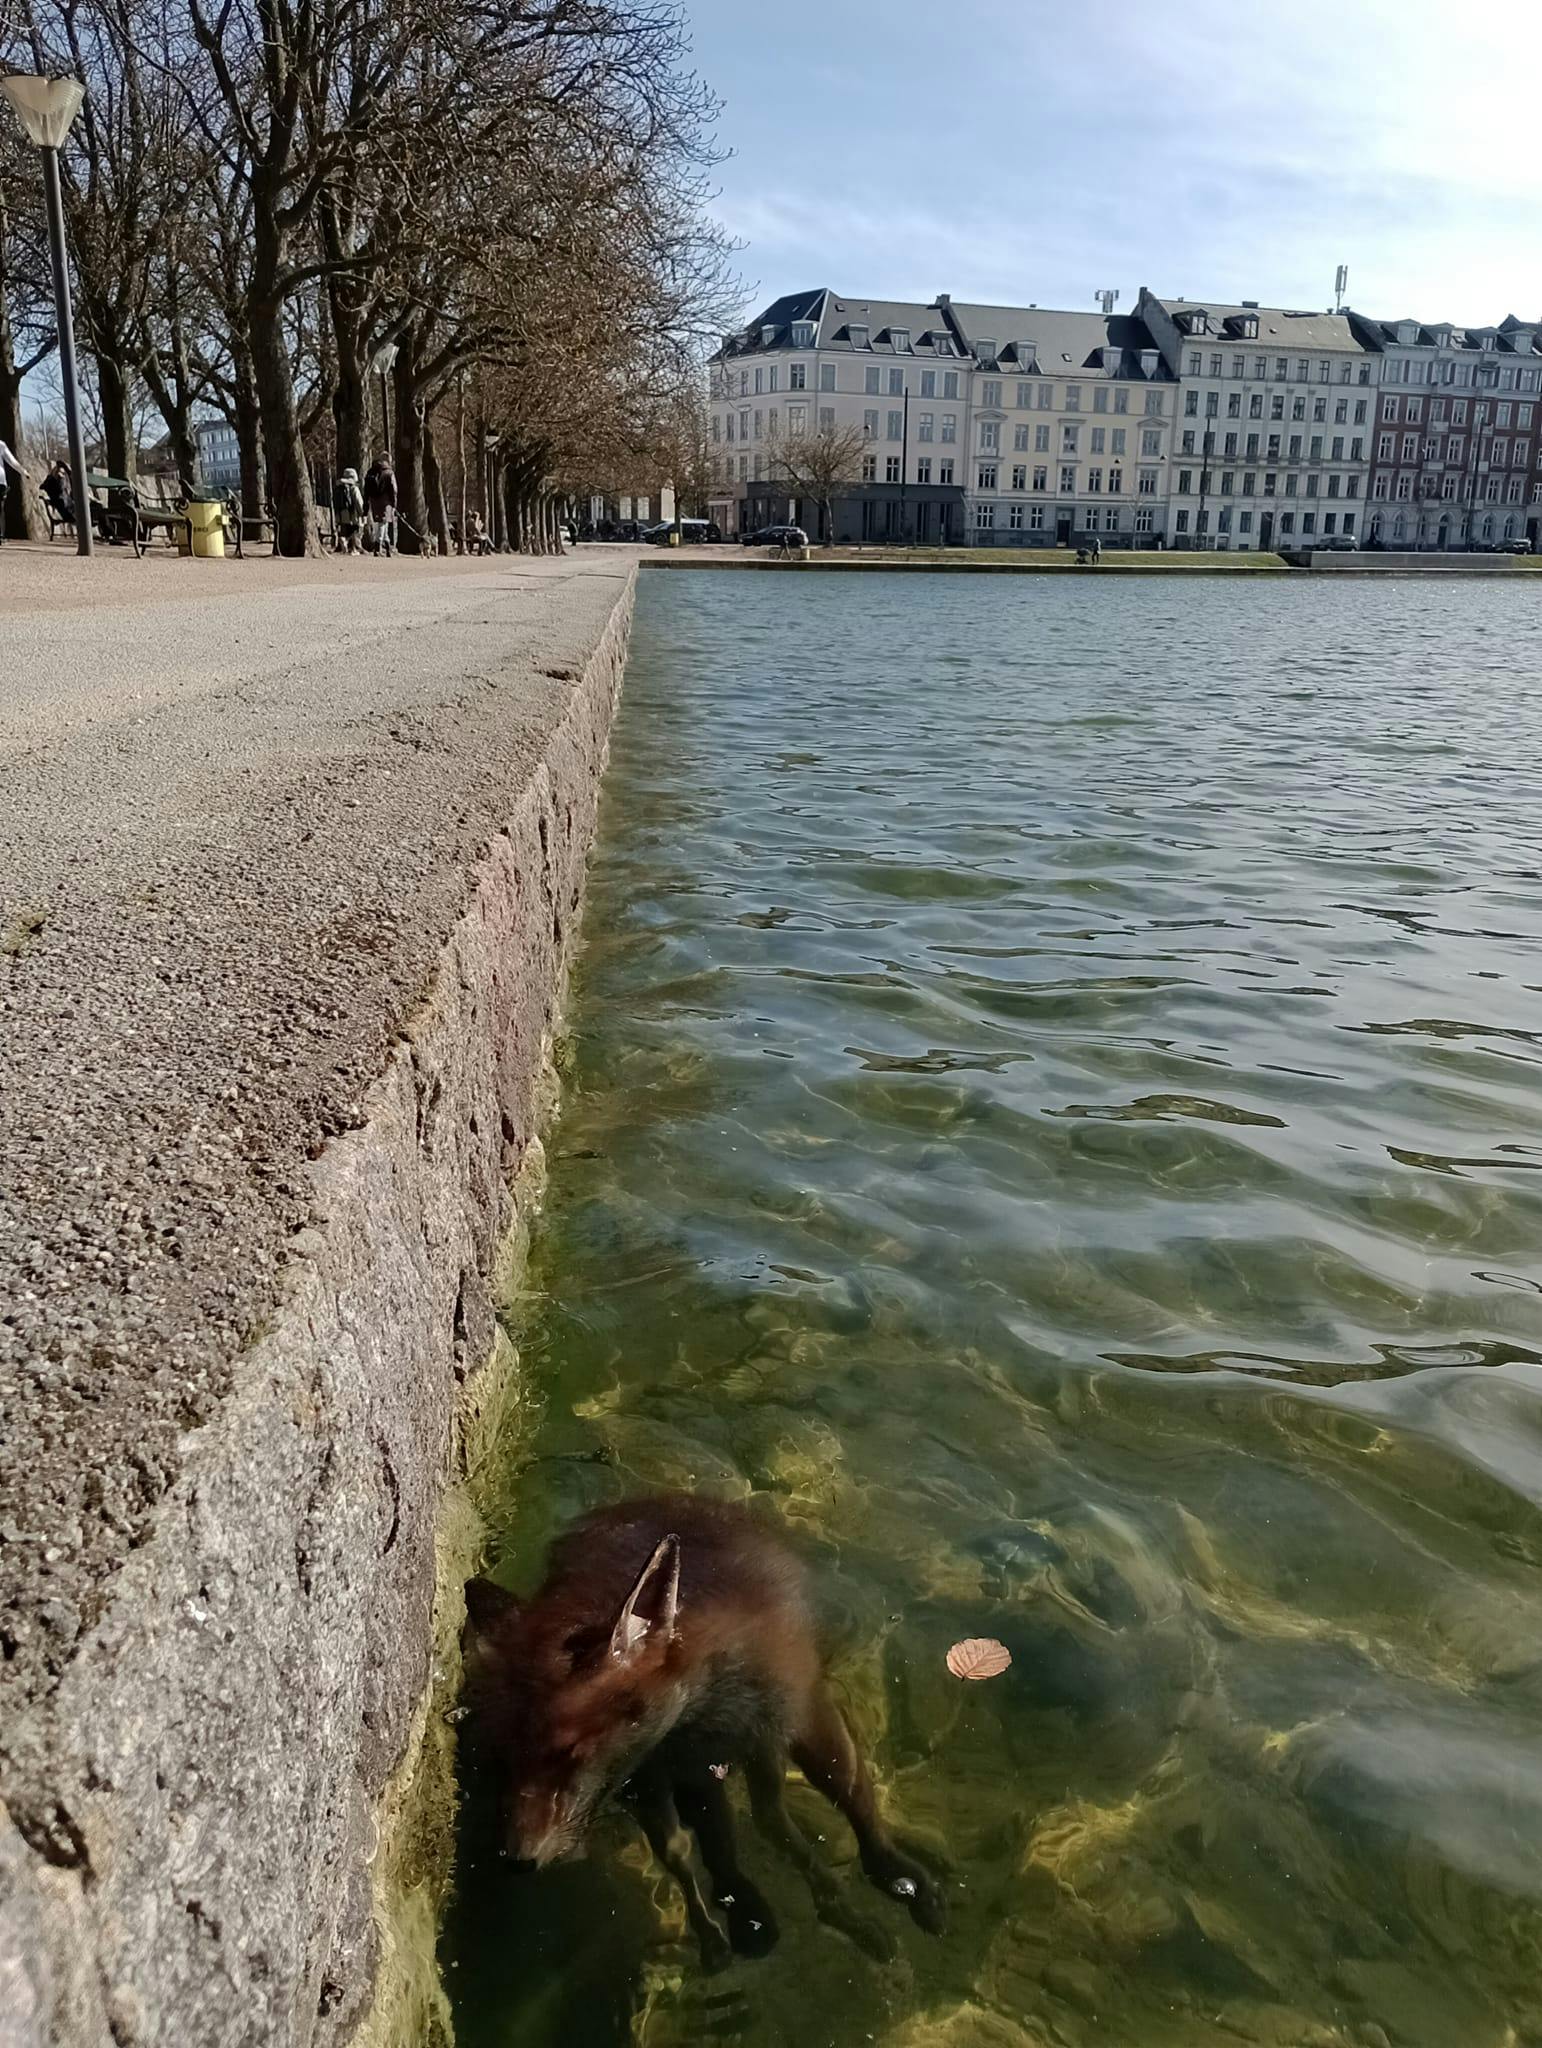 En ræv er på tragisk vis druknet i Søerne i København - formentlig fordi den ikke kunne komme op af vandet, fordi der er ingen trappe eller lignende er.
